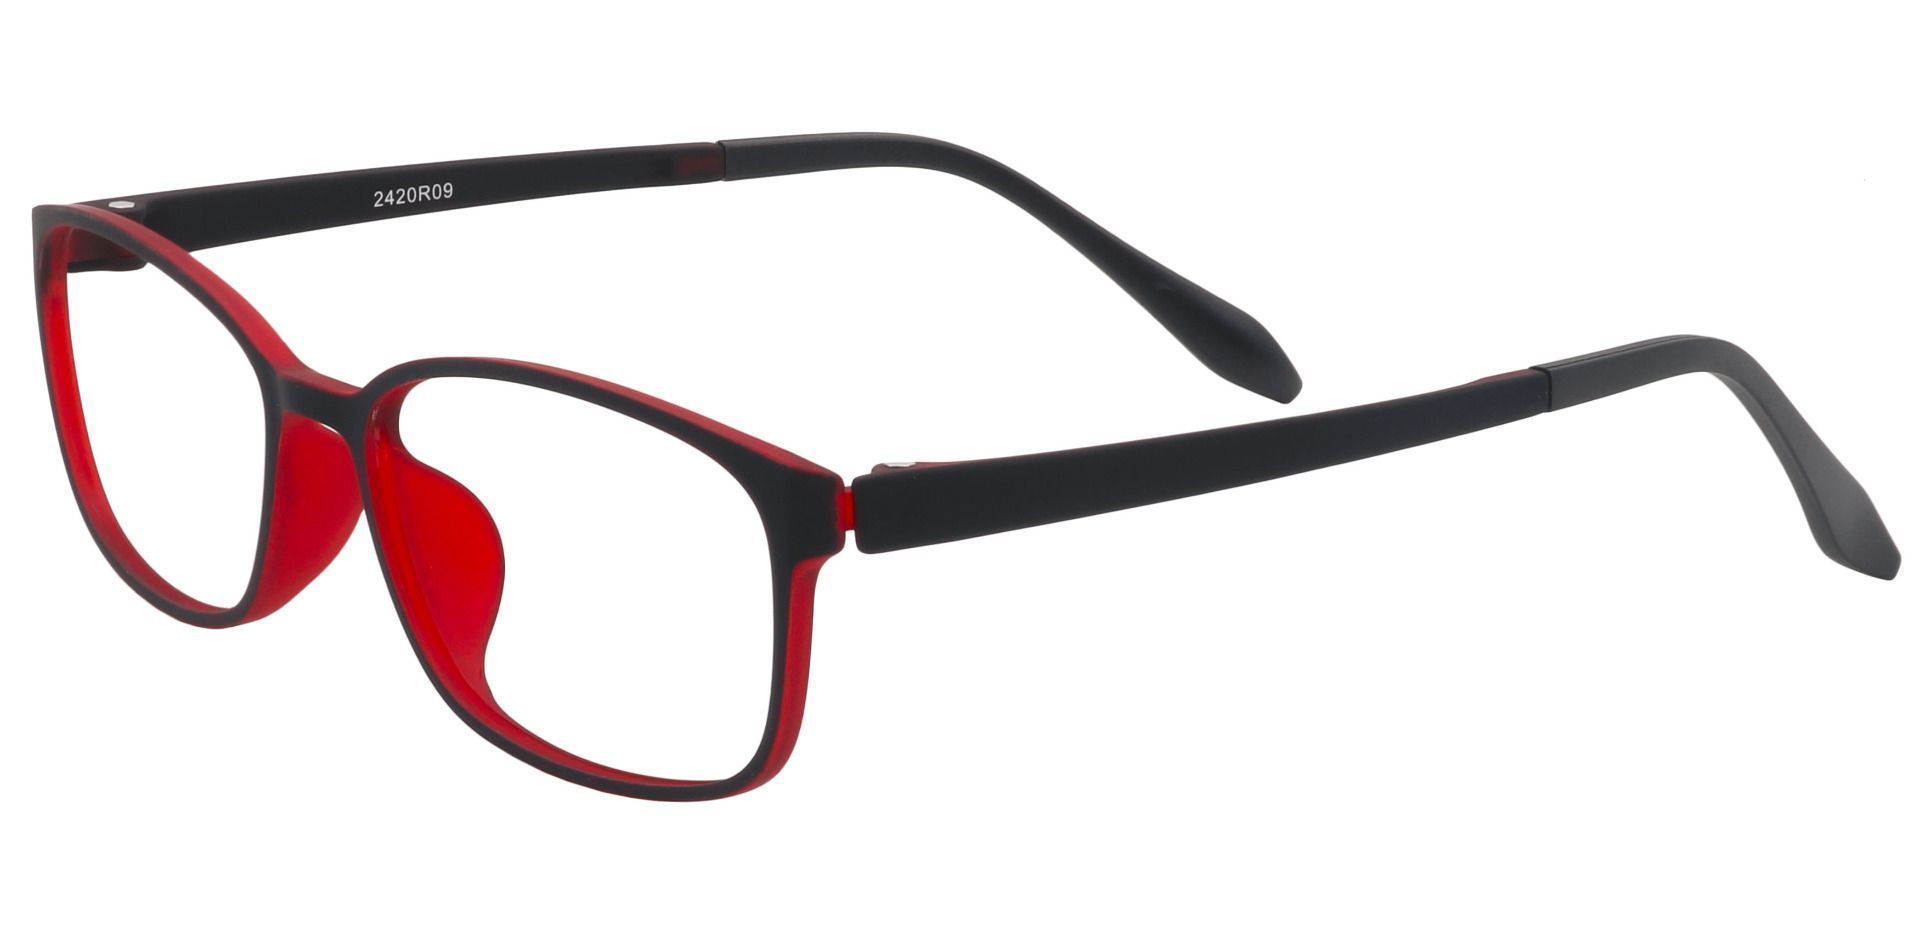 Merlot Rectangle Reading Glasses - Matte Black/red